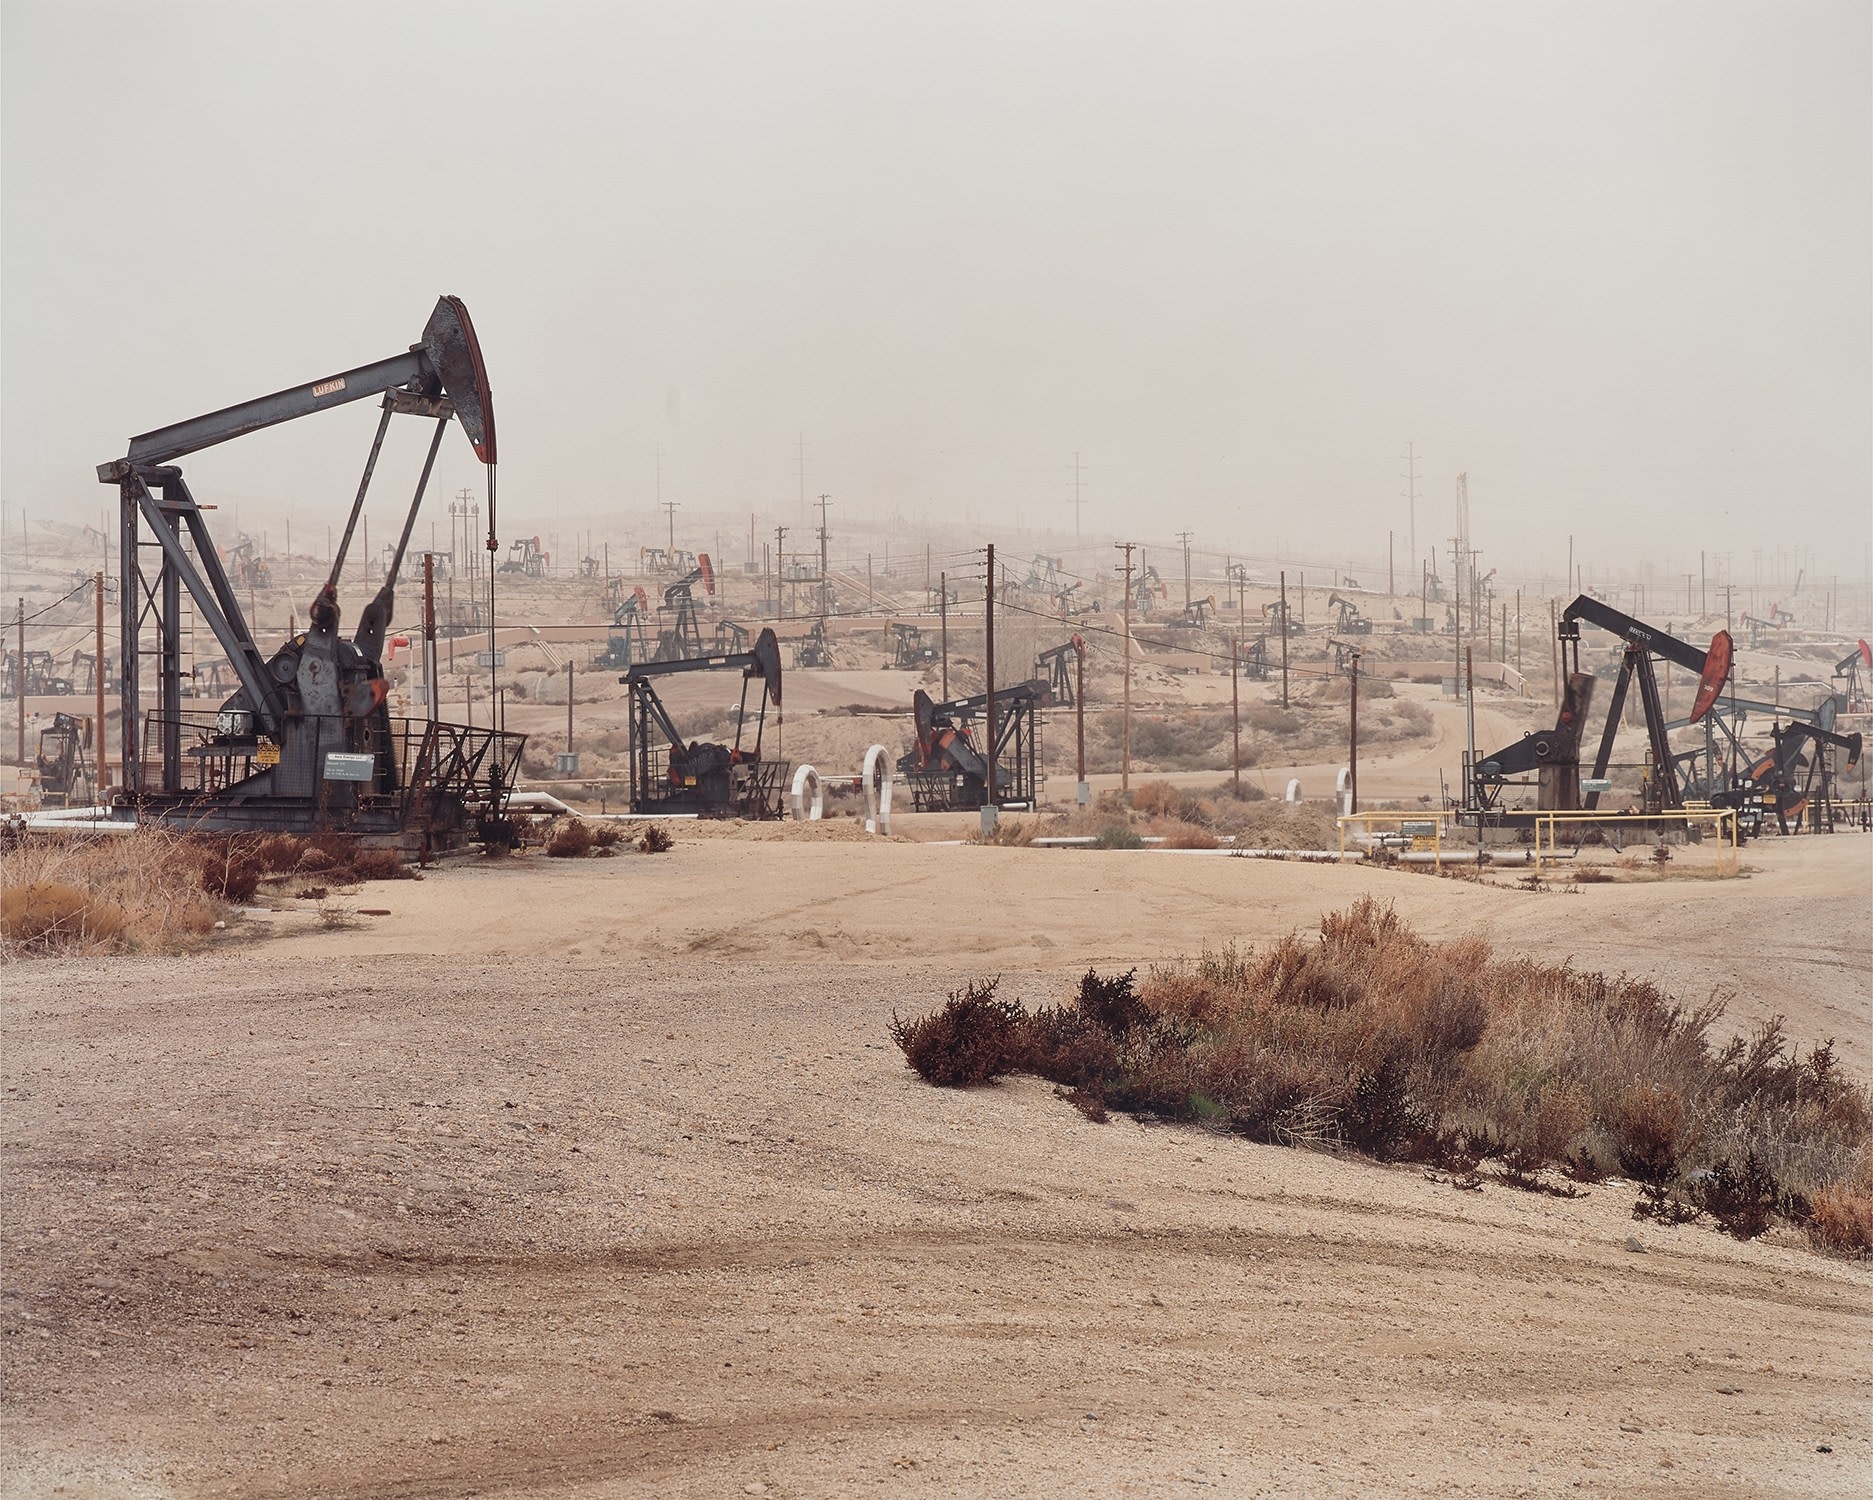 Oil Fields #6, McKittrick, California by Edward Burtynsky, 2002